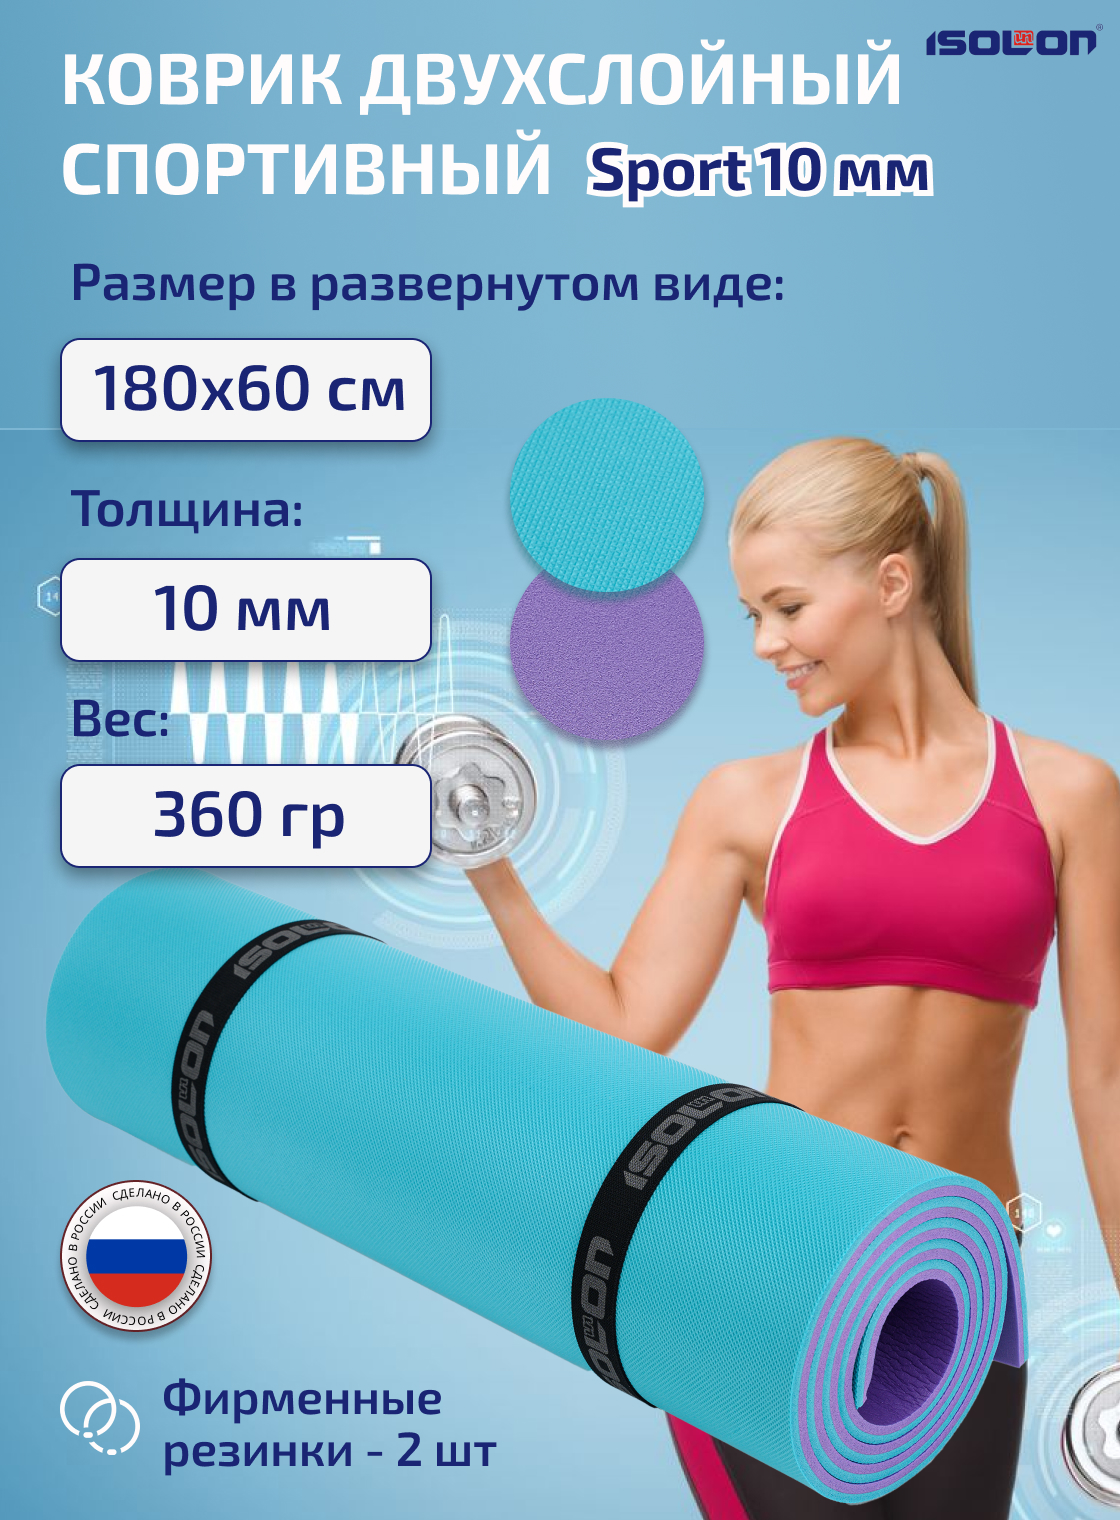 Коврик спортивный для фитнеса и йоги Isolon Sport 10 мм, 180х60 см бирюзовый/фиолетовый